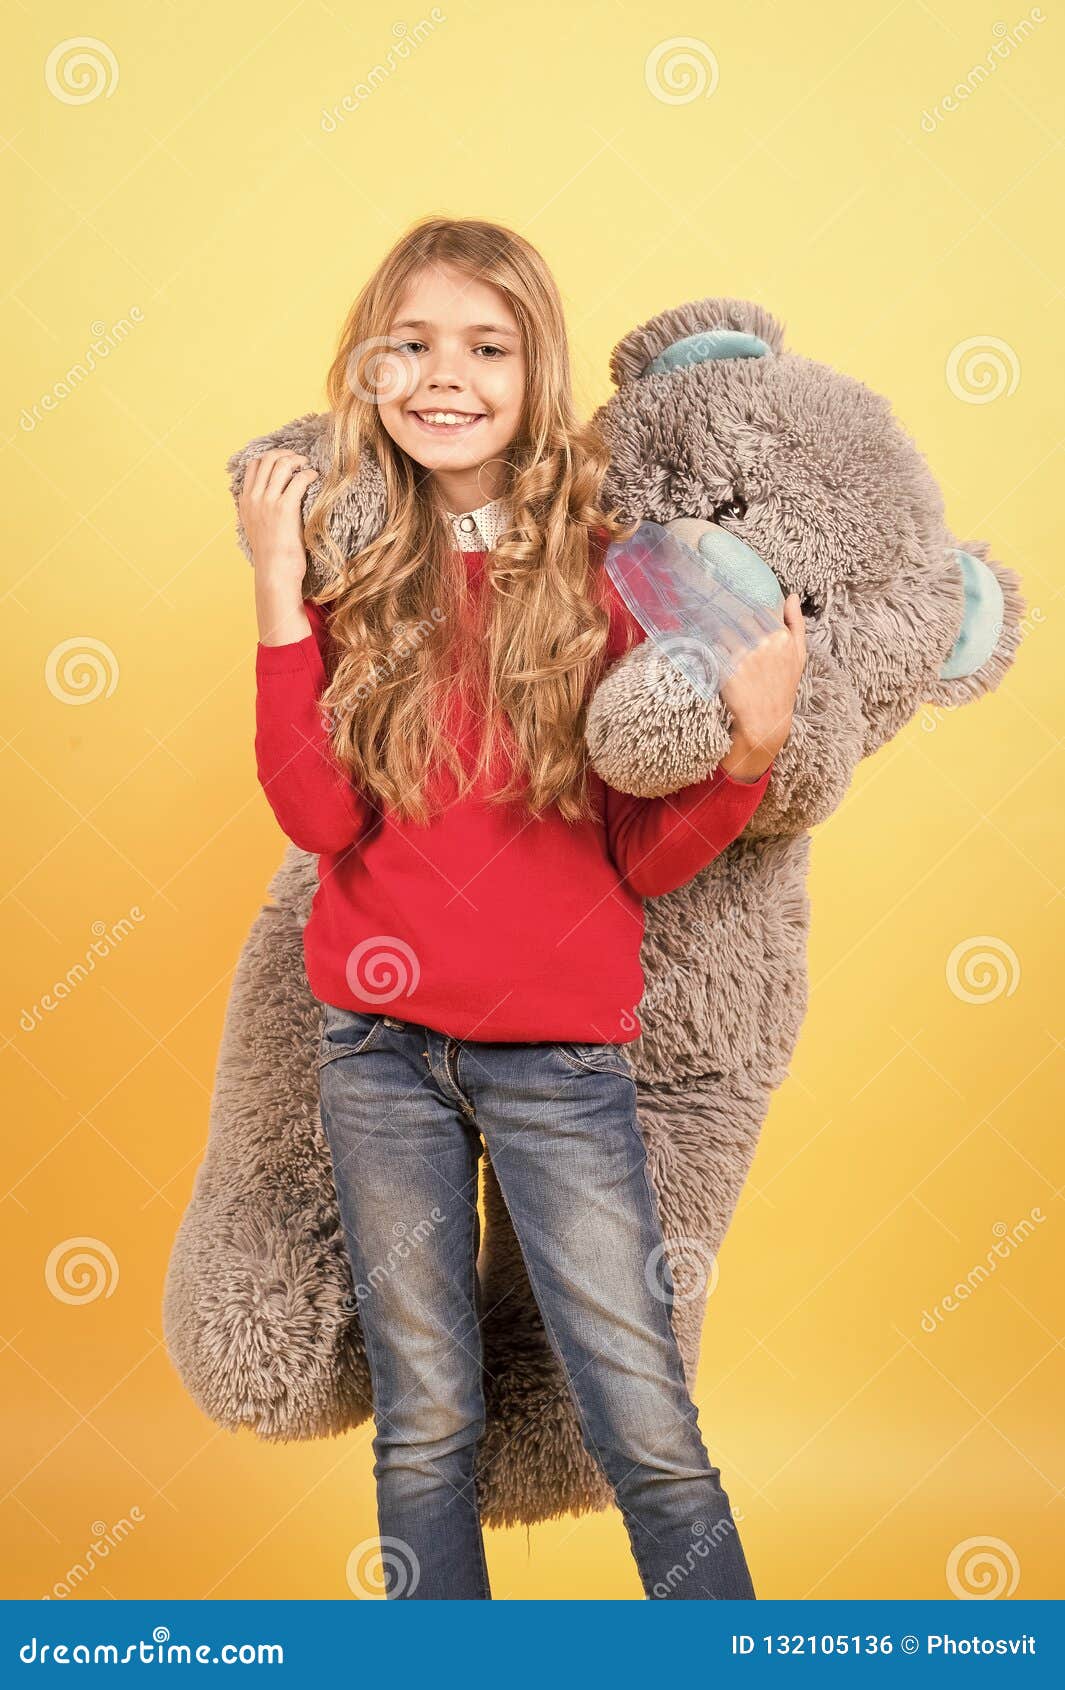 Girl Hug Big Teddy Bear on Orange Background Stock Photo - Image of ...